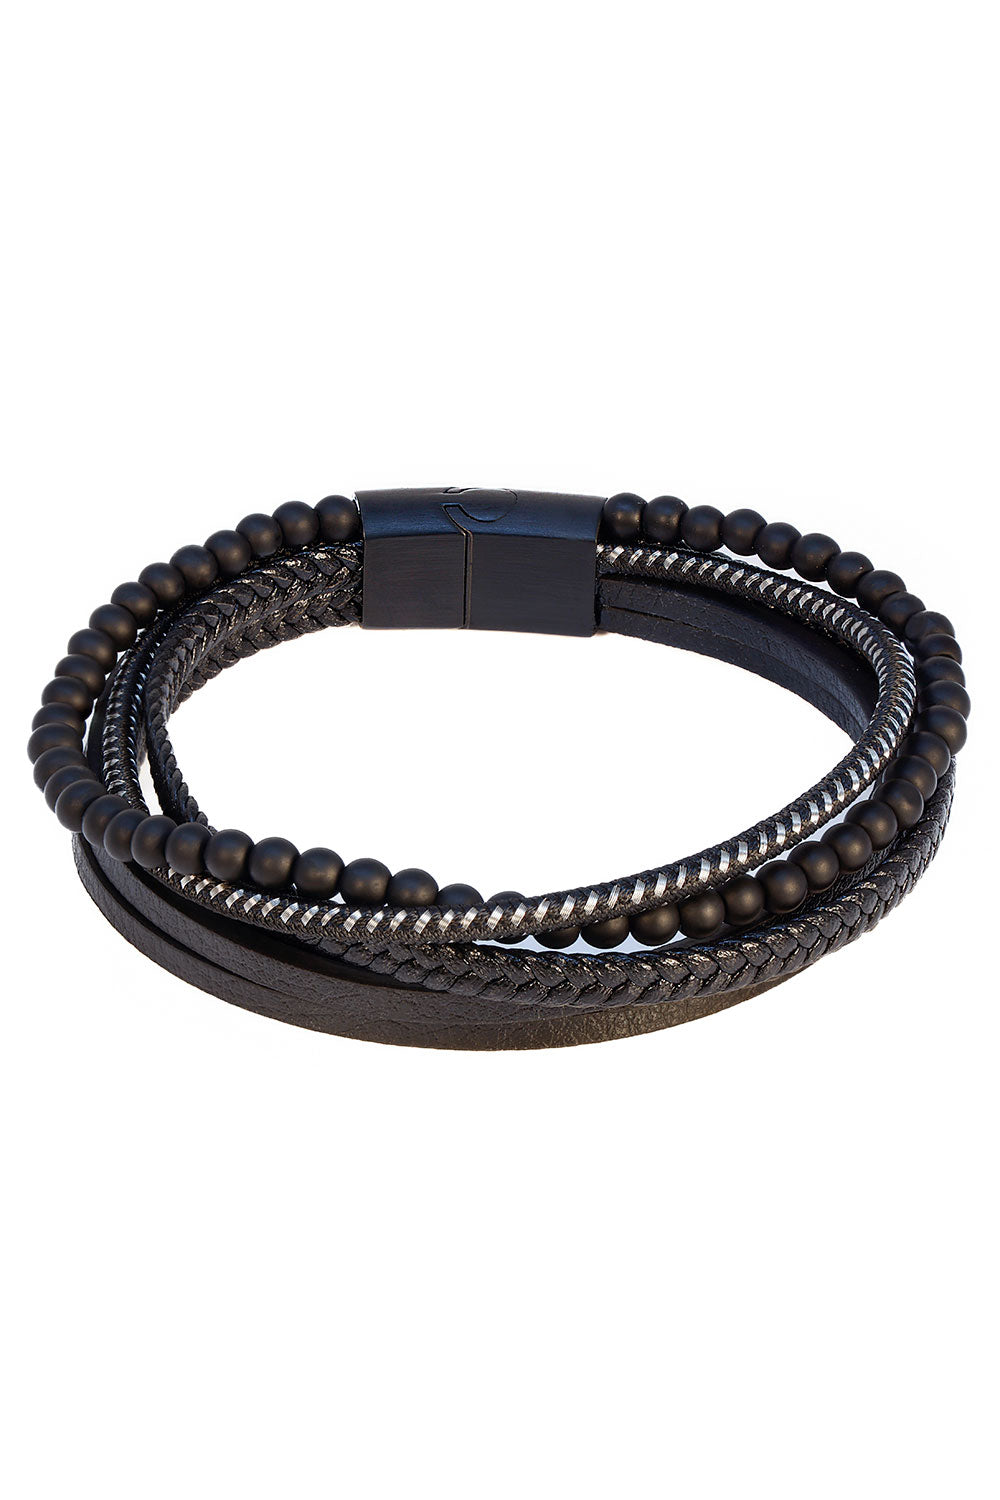 Barabas Unisex Rope Multi-Layer Braided Leather Bracelets 4BMS10 Black